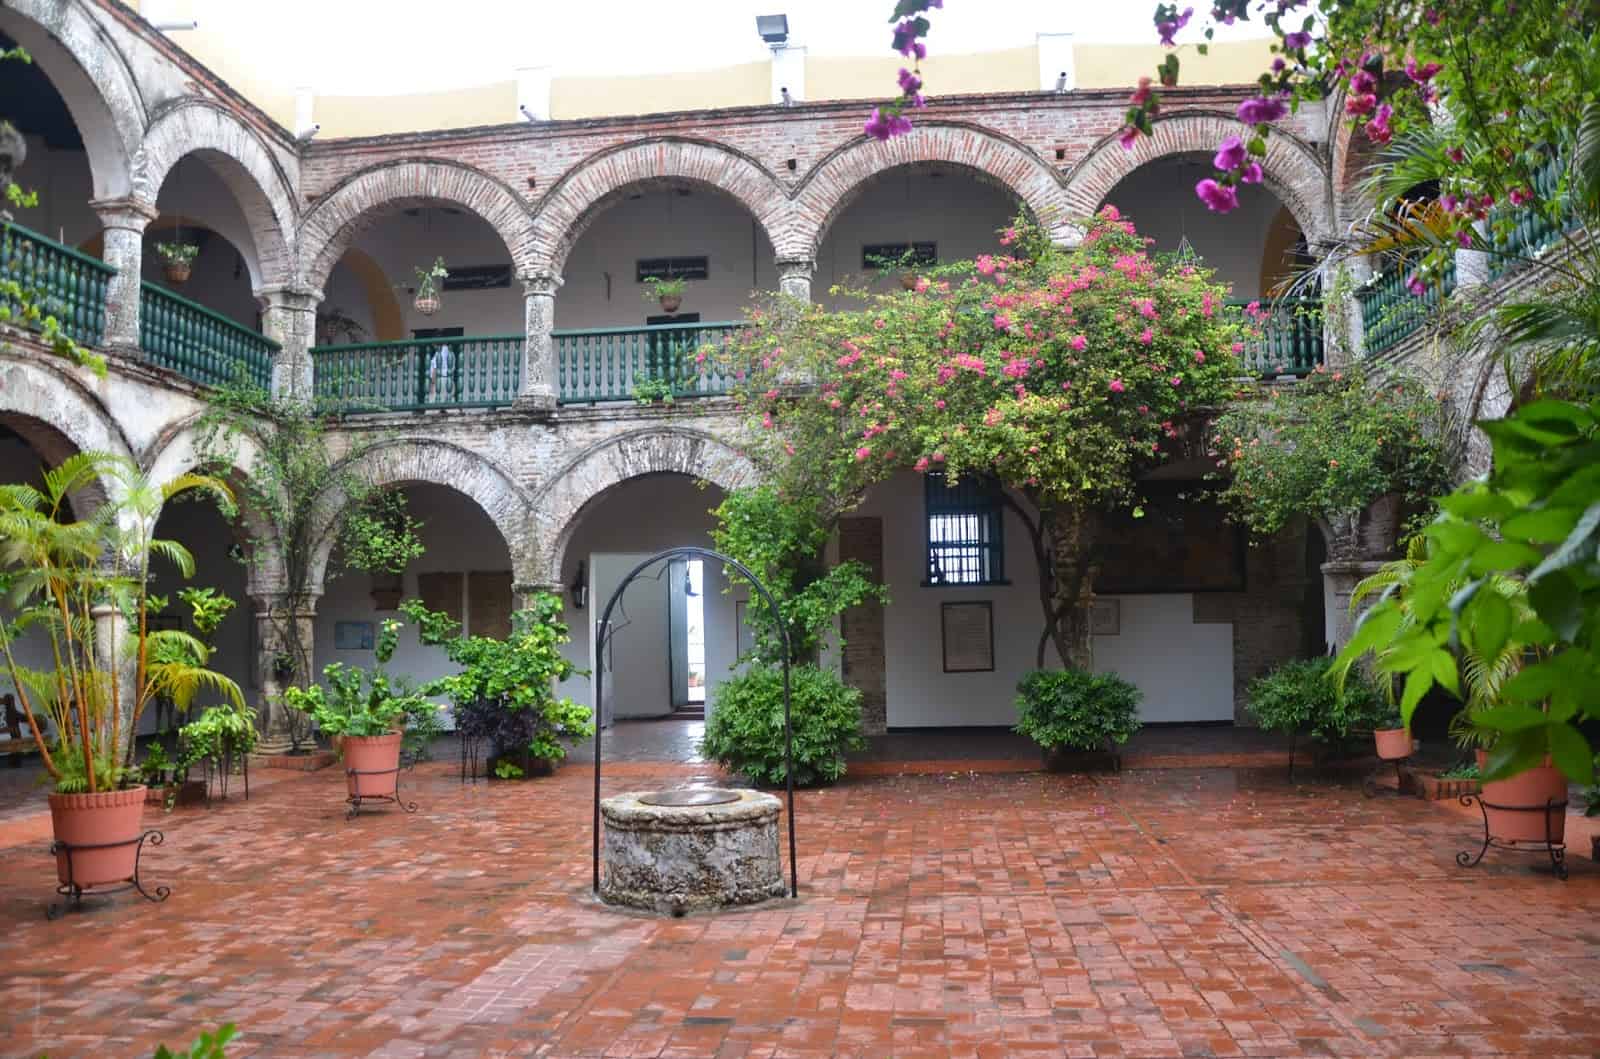 Courtyard at La Popa Convent in Cartagena, Bolívar, Colombia